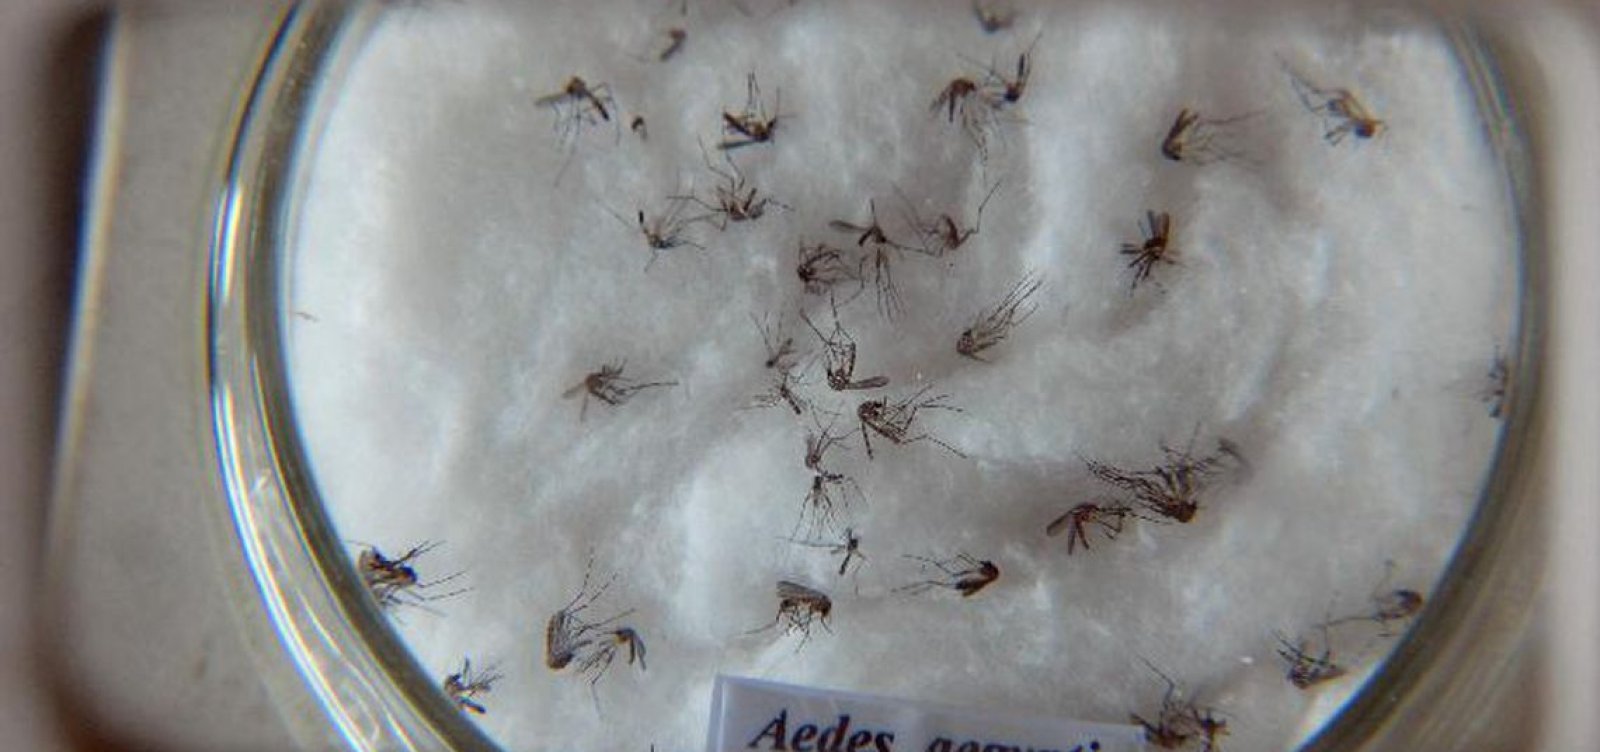 Plano de combate ao mosquito da dengue para o verão começa na segunda em Salvador